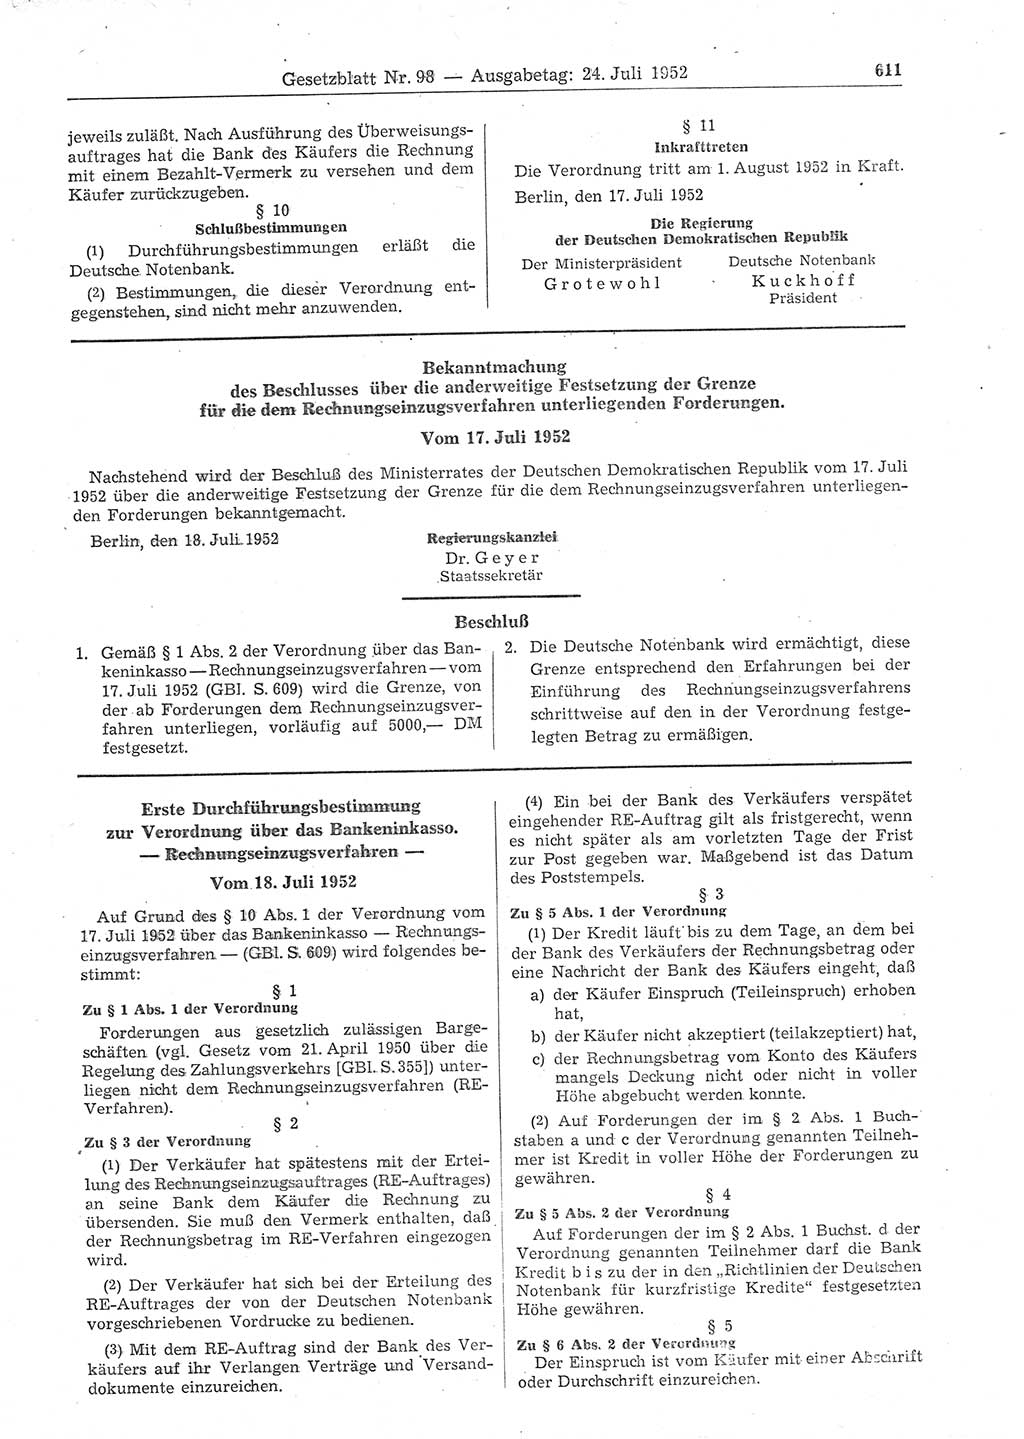 Gesetzblatt (GBl.) der Deutschen Demokratischen Republik (DDR) 1952, Seite 611 (GBl. DDR 1952, S. 611)